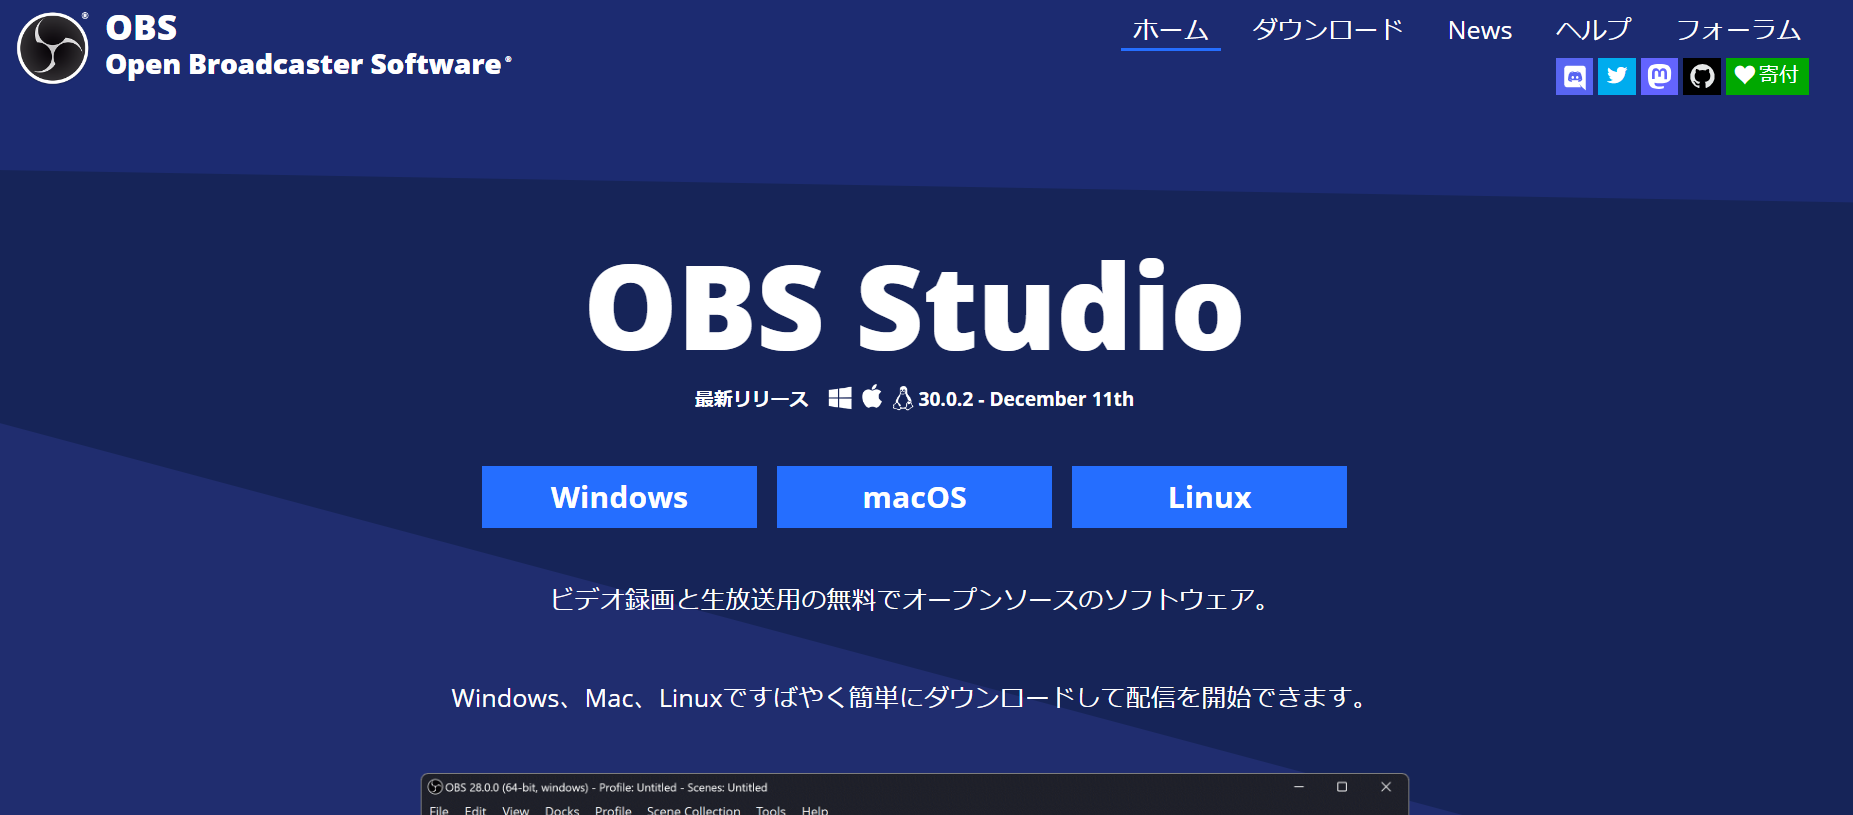 1.OBSの公式サイト